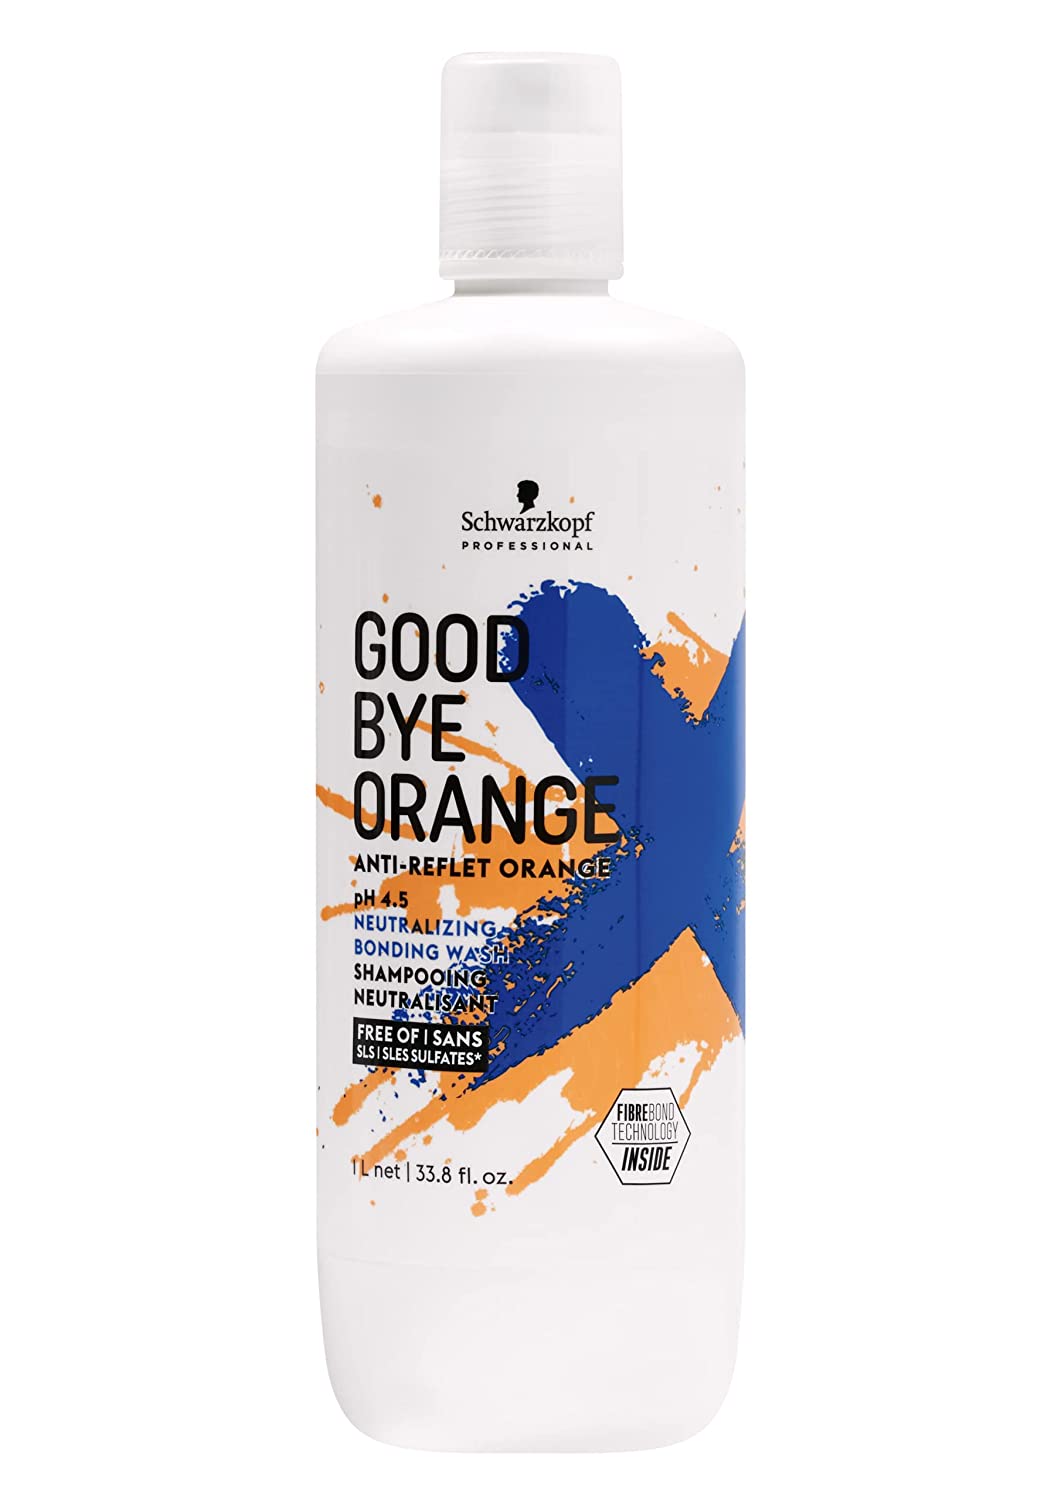 Schwarzkopf - Good Bye Orange - Anti Reflet Orange - pH 4.5